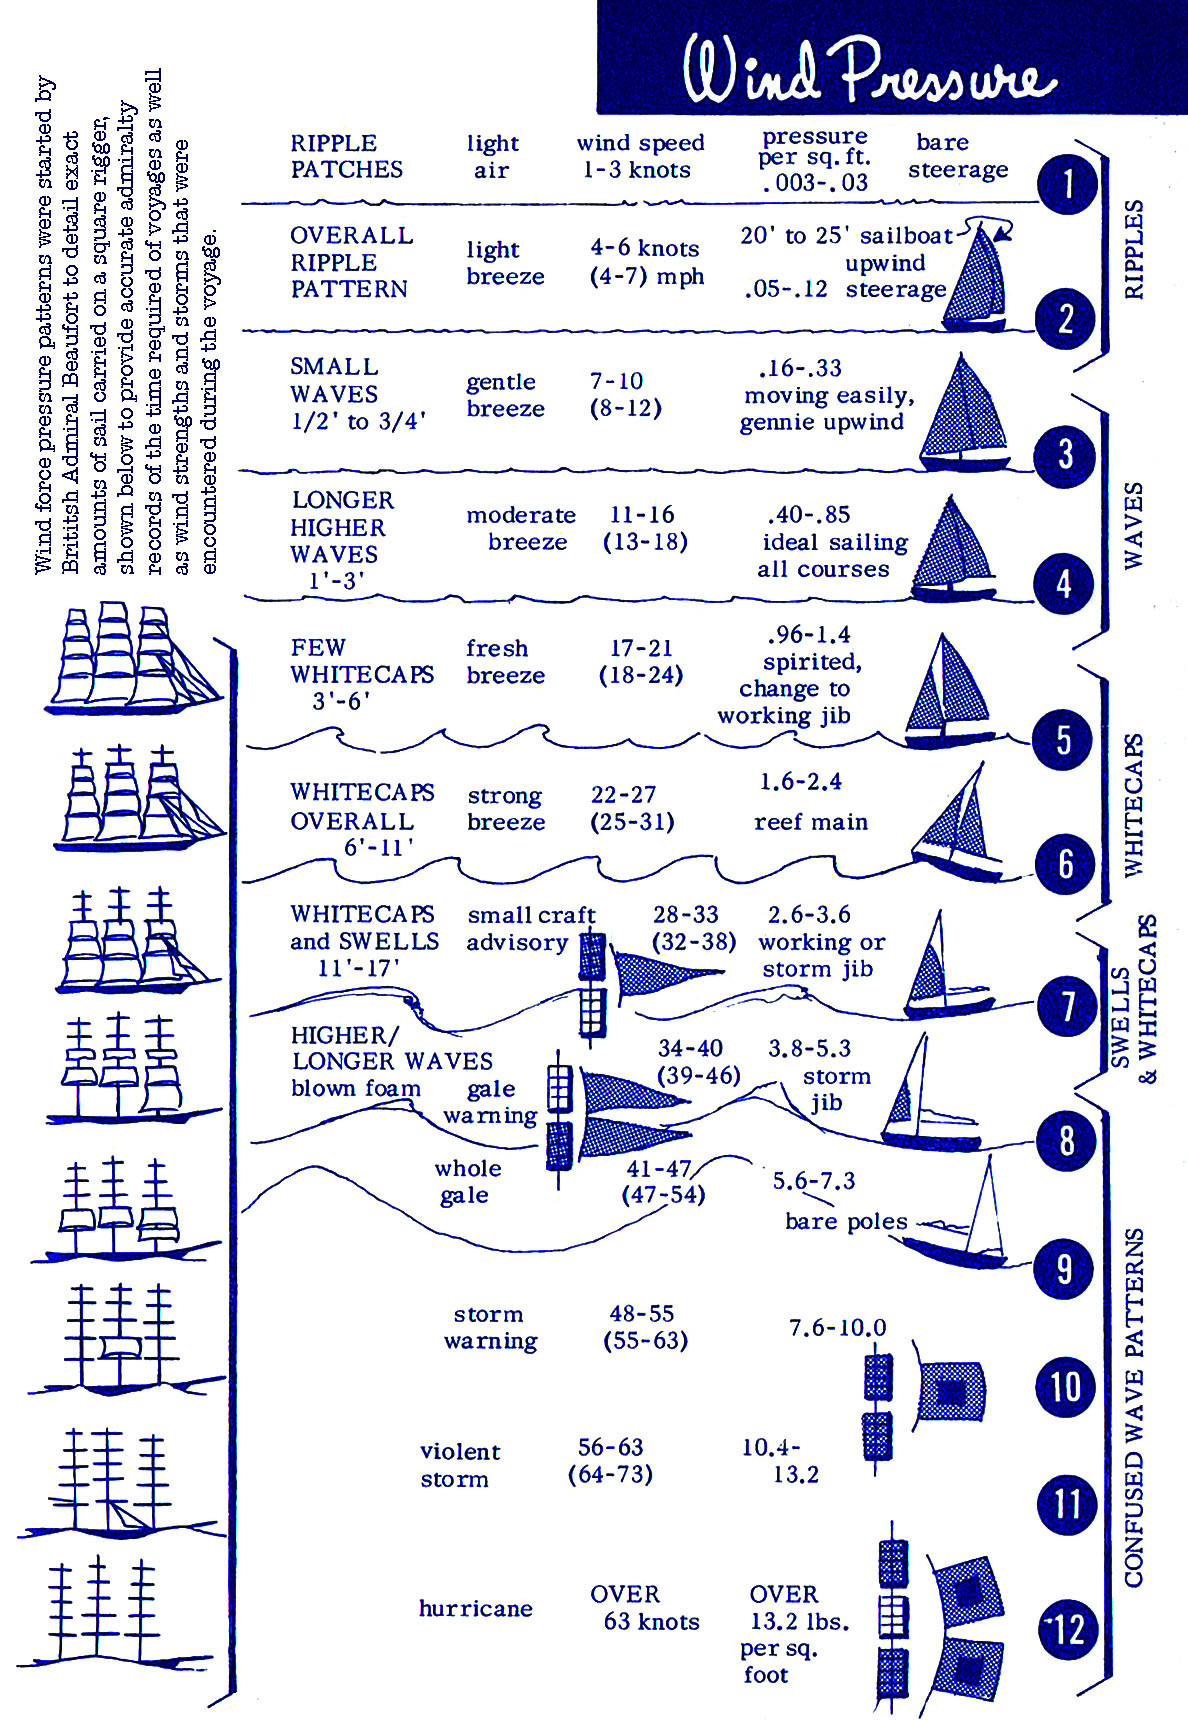 Sailing Wind Pressure Beaufort Scale